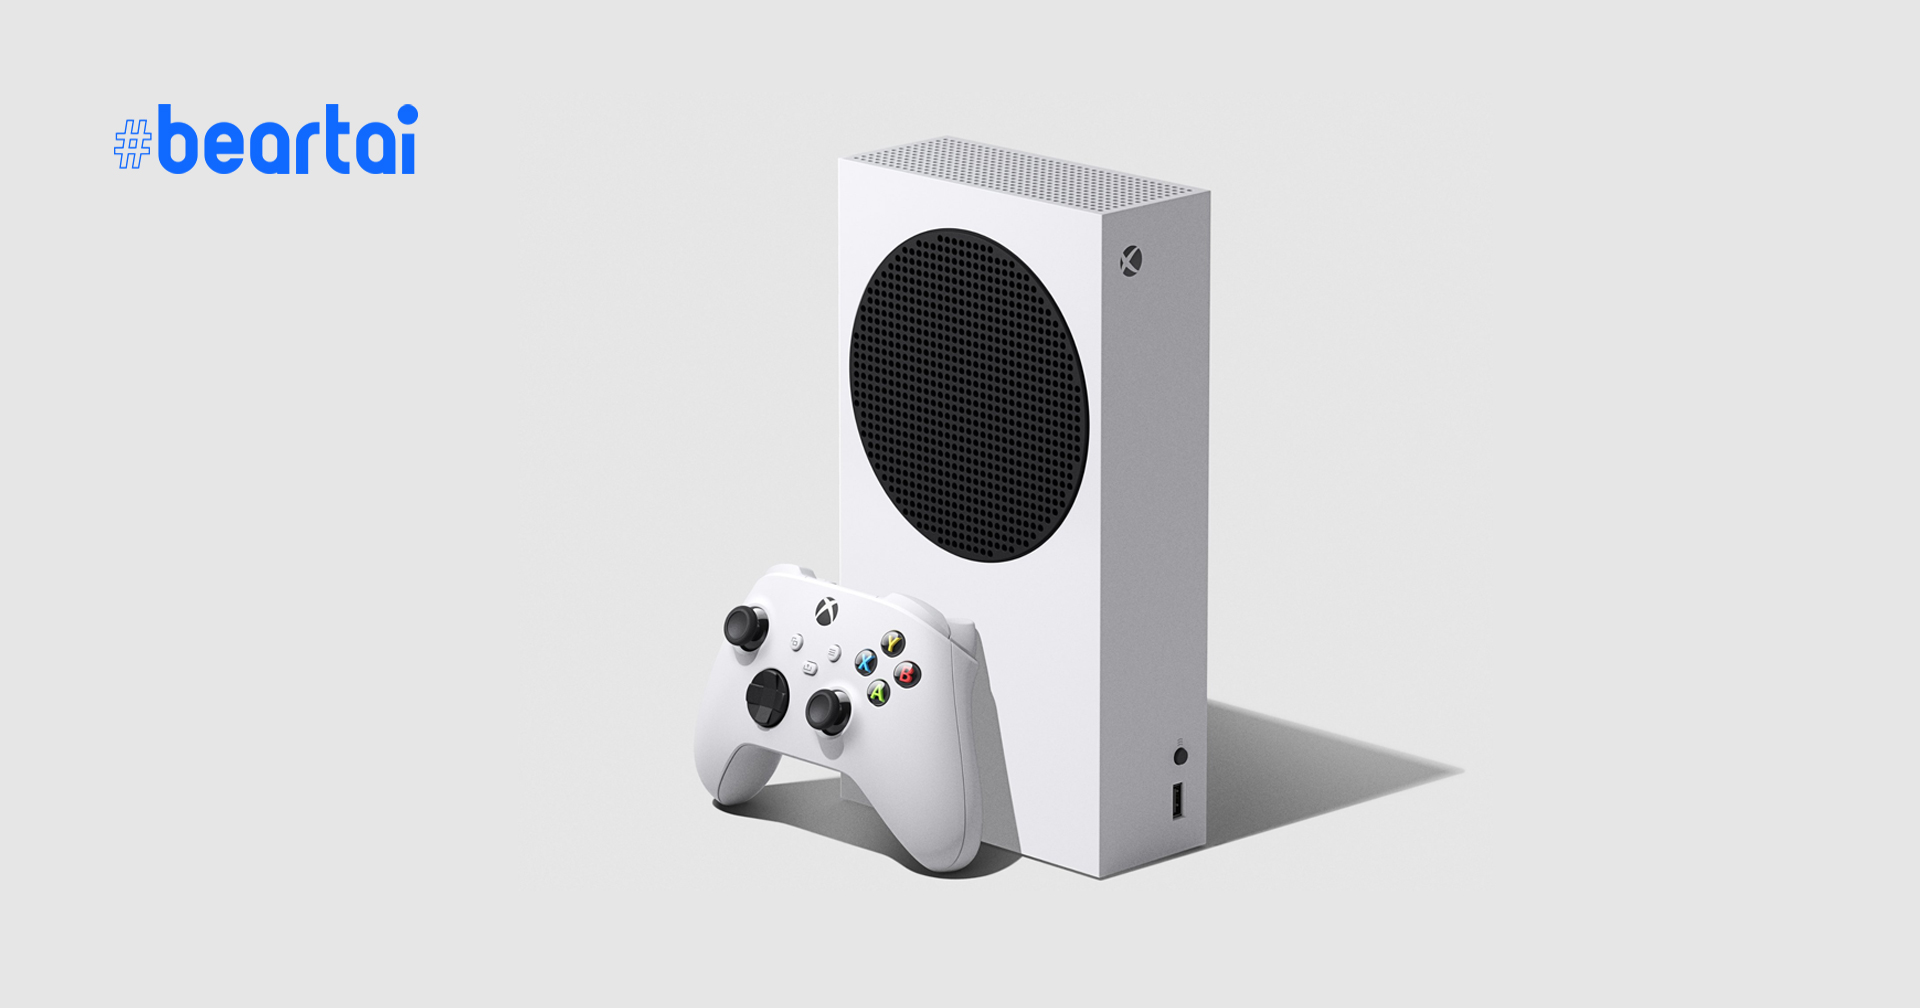 เปิดตัว Xbox Series S ขุมพลัง Next Gen ในรุ่นประหยัด ราคา 9,400 บาท! กำหนดขาย 10 พย.